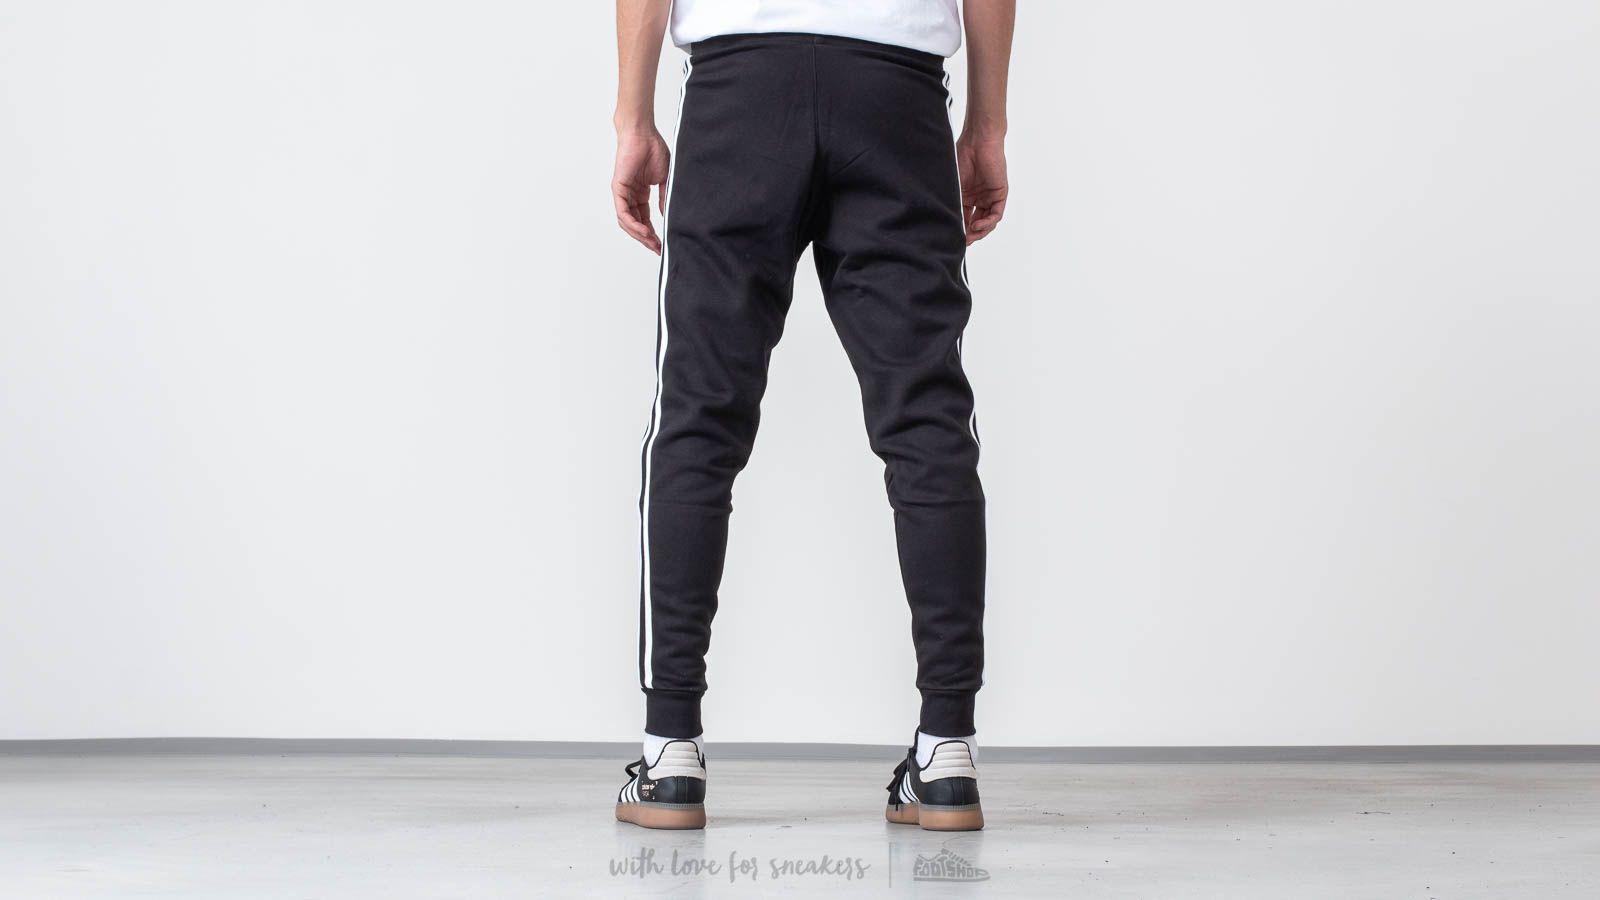 Jogger Pants adidas Originals 3-Stripes Pants Black